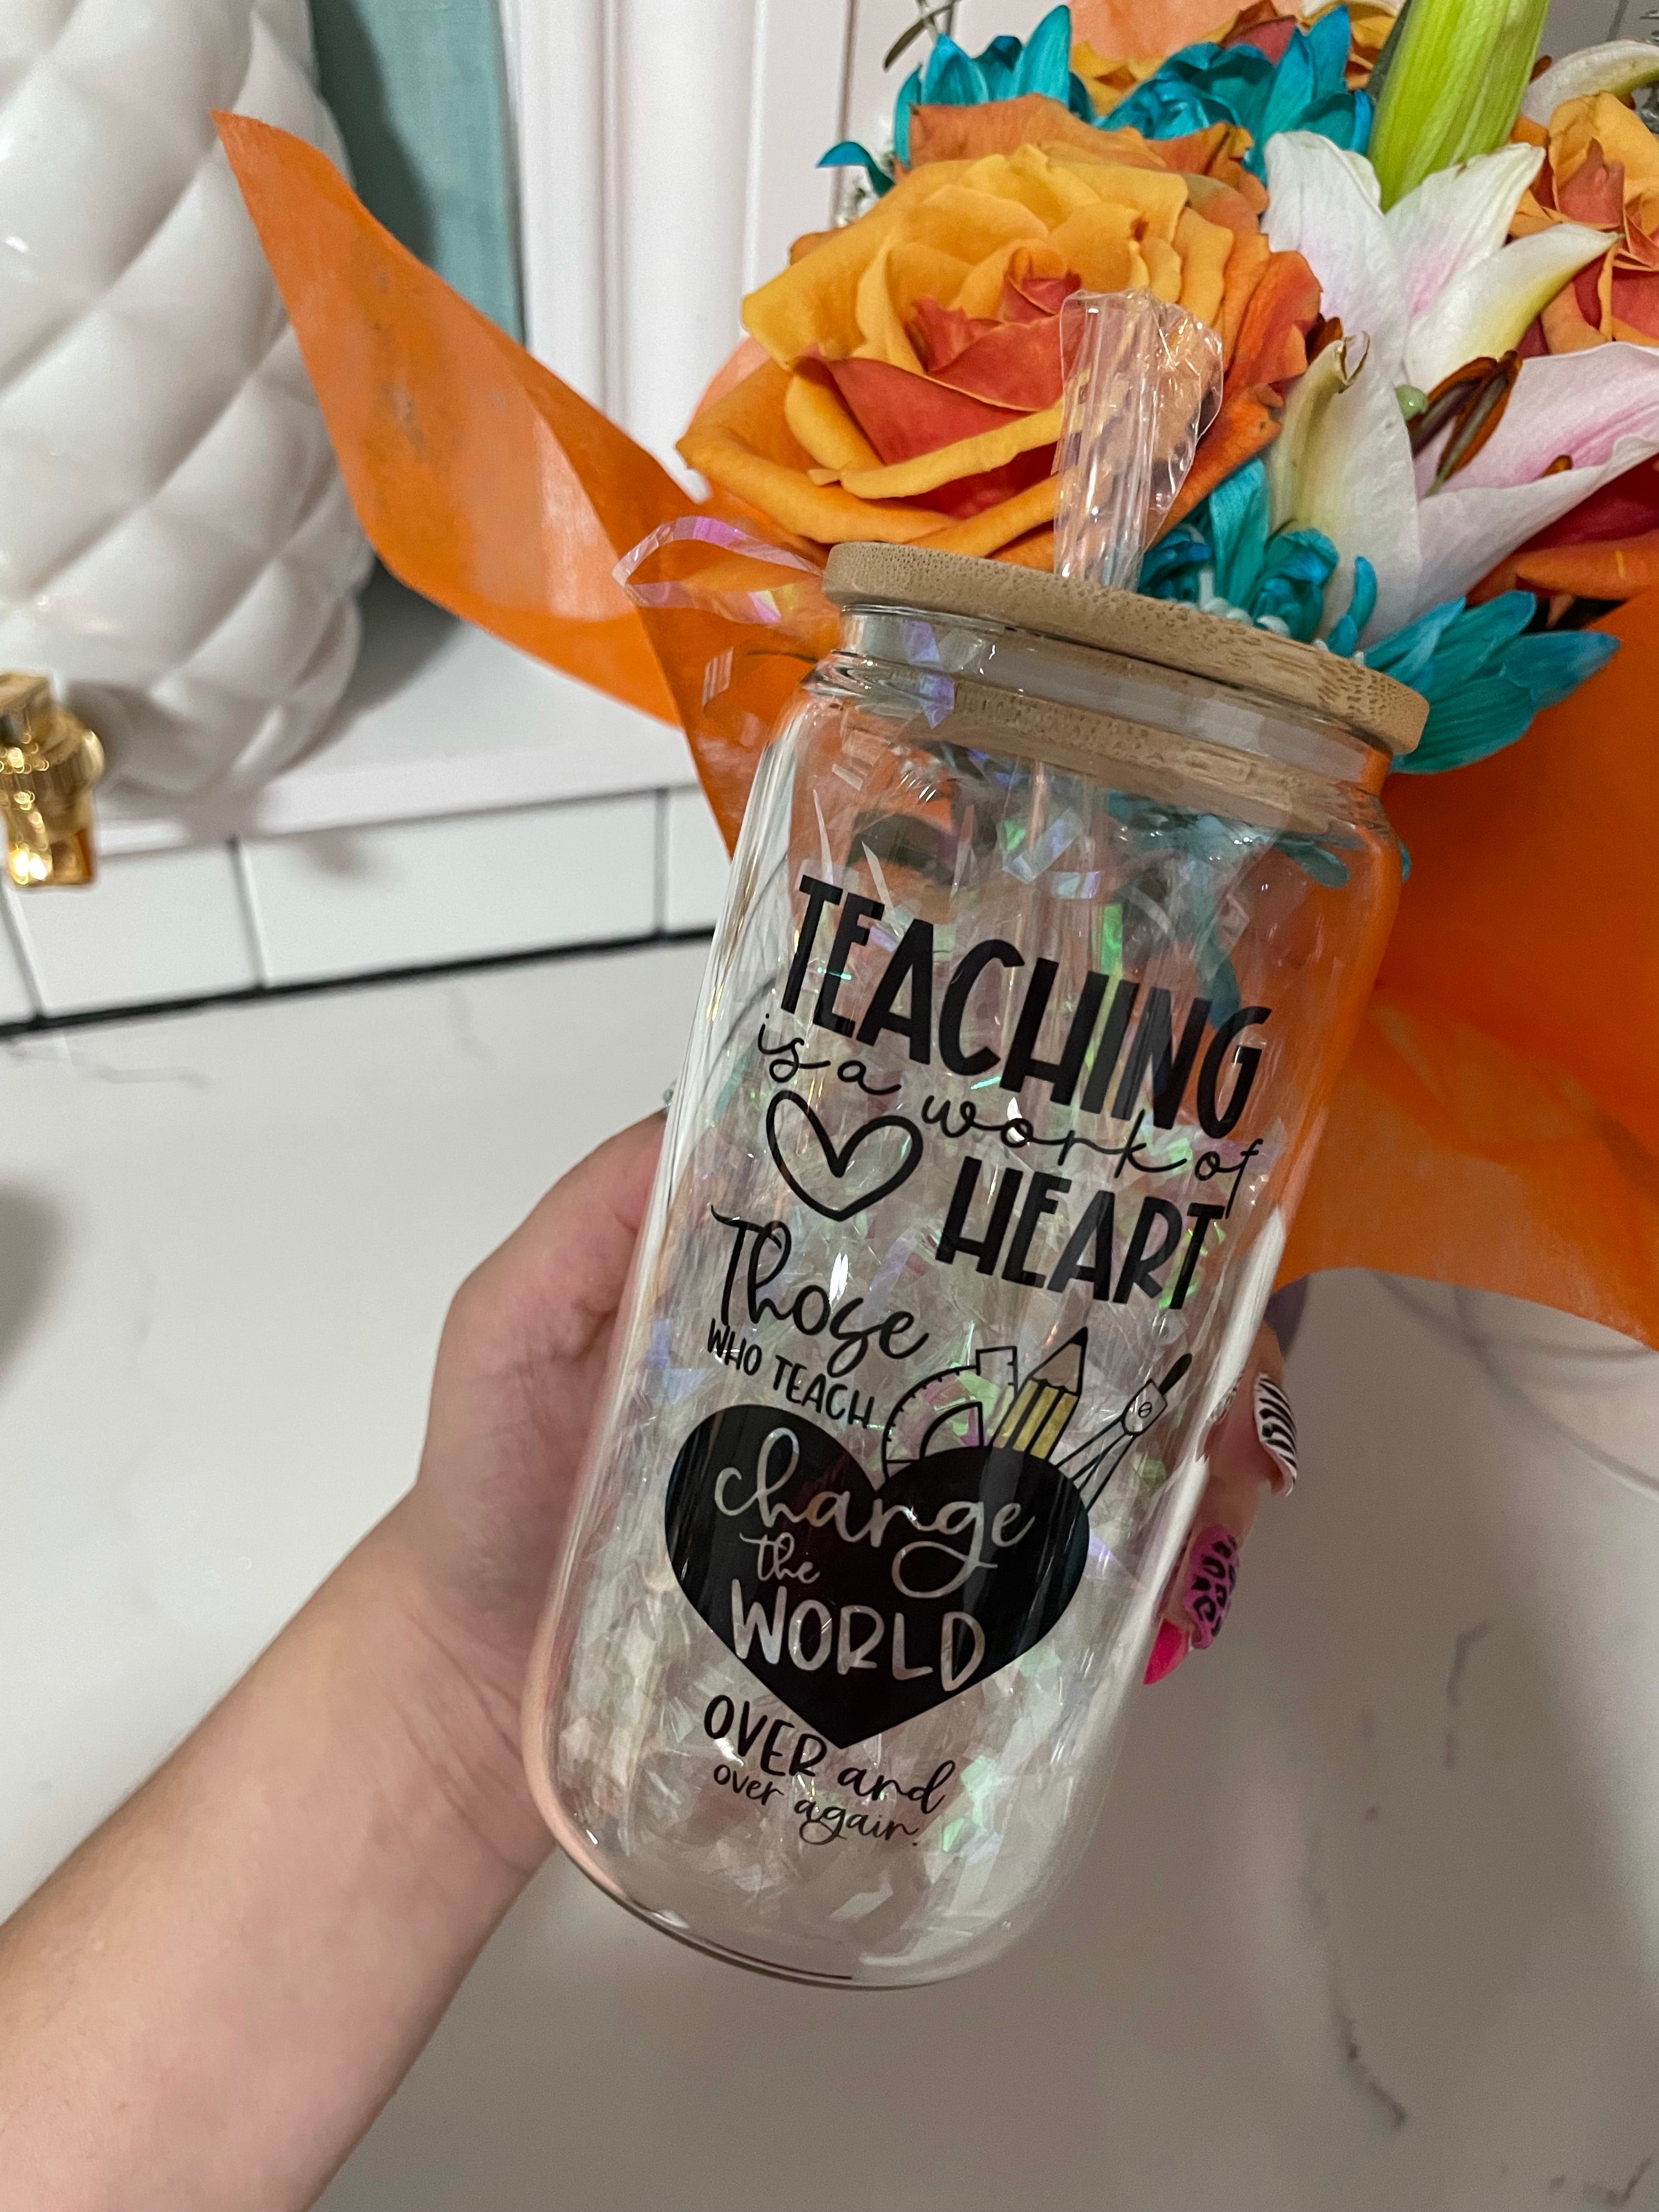 Teacher’s glass cup.